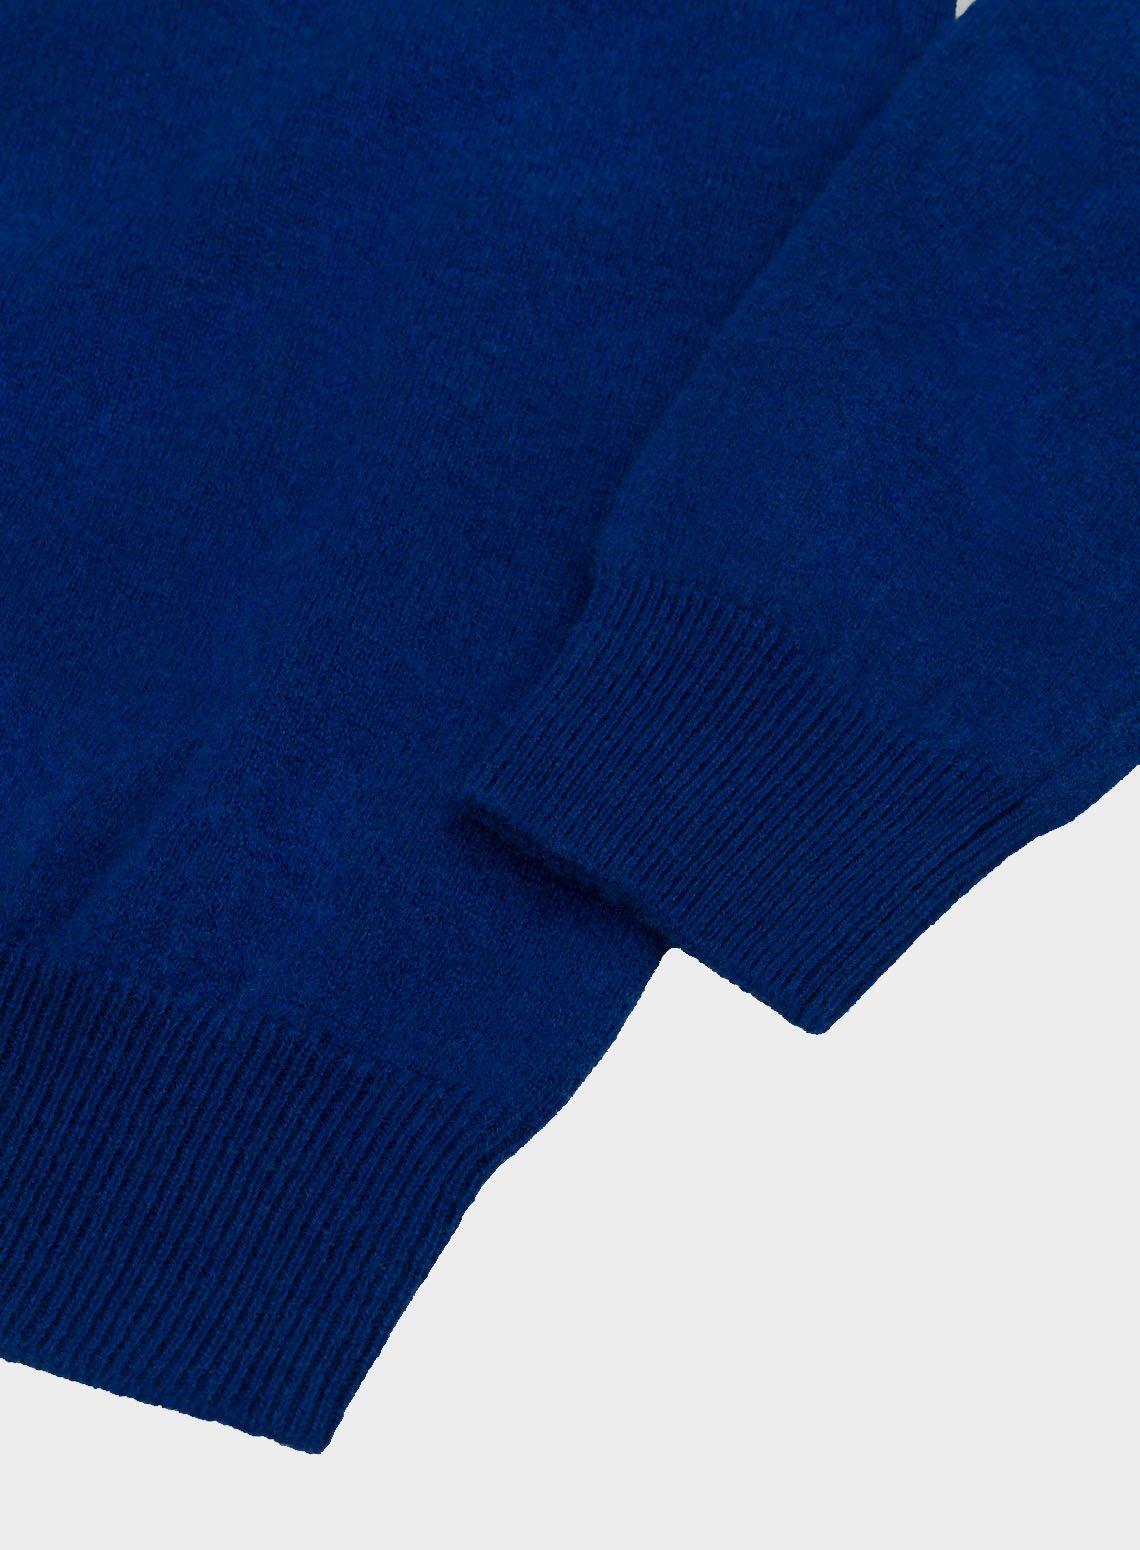 Cashmere 1/4 Zip in Ultra Blue